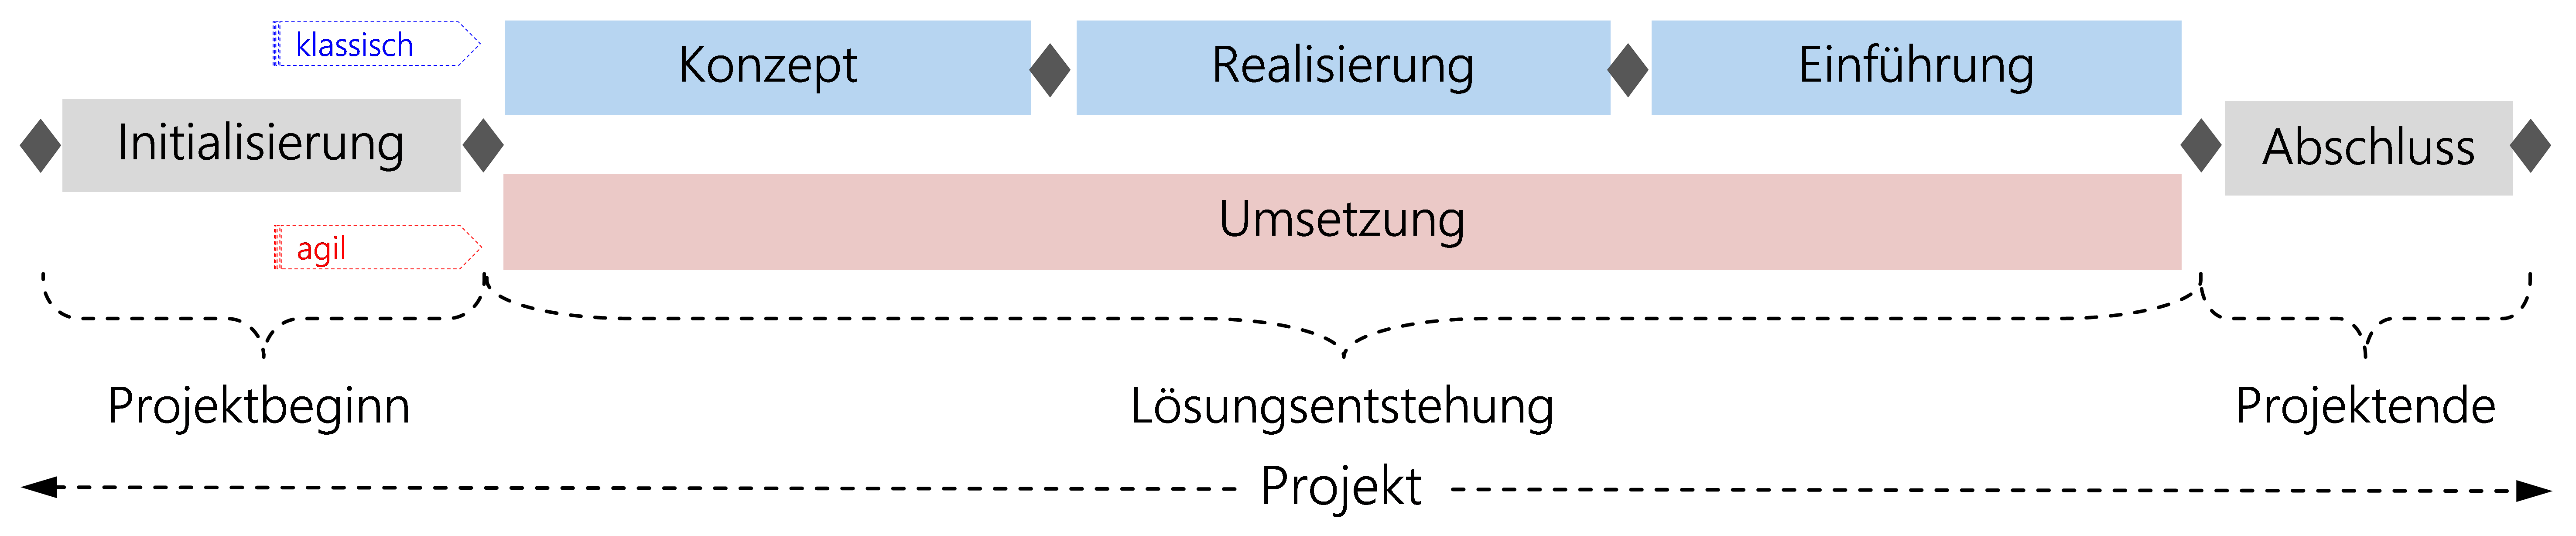 Abbildung 5: HERMES-Projektlebenszyklus mit Phasenmodell für klassische und agile Vorgehensweise